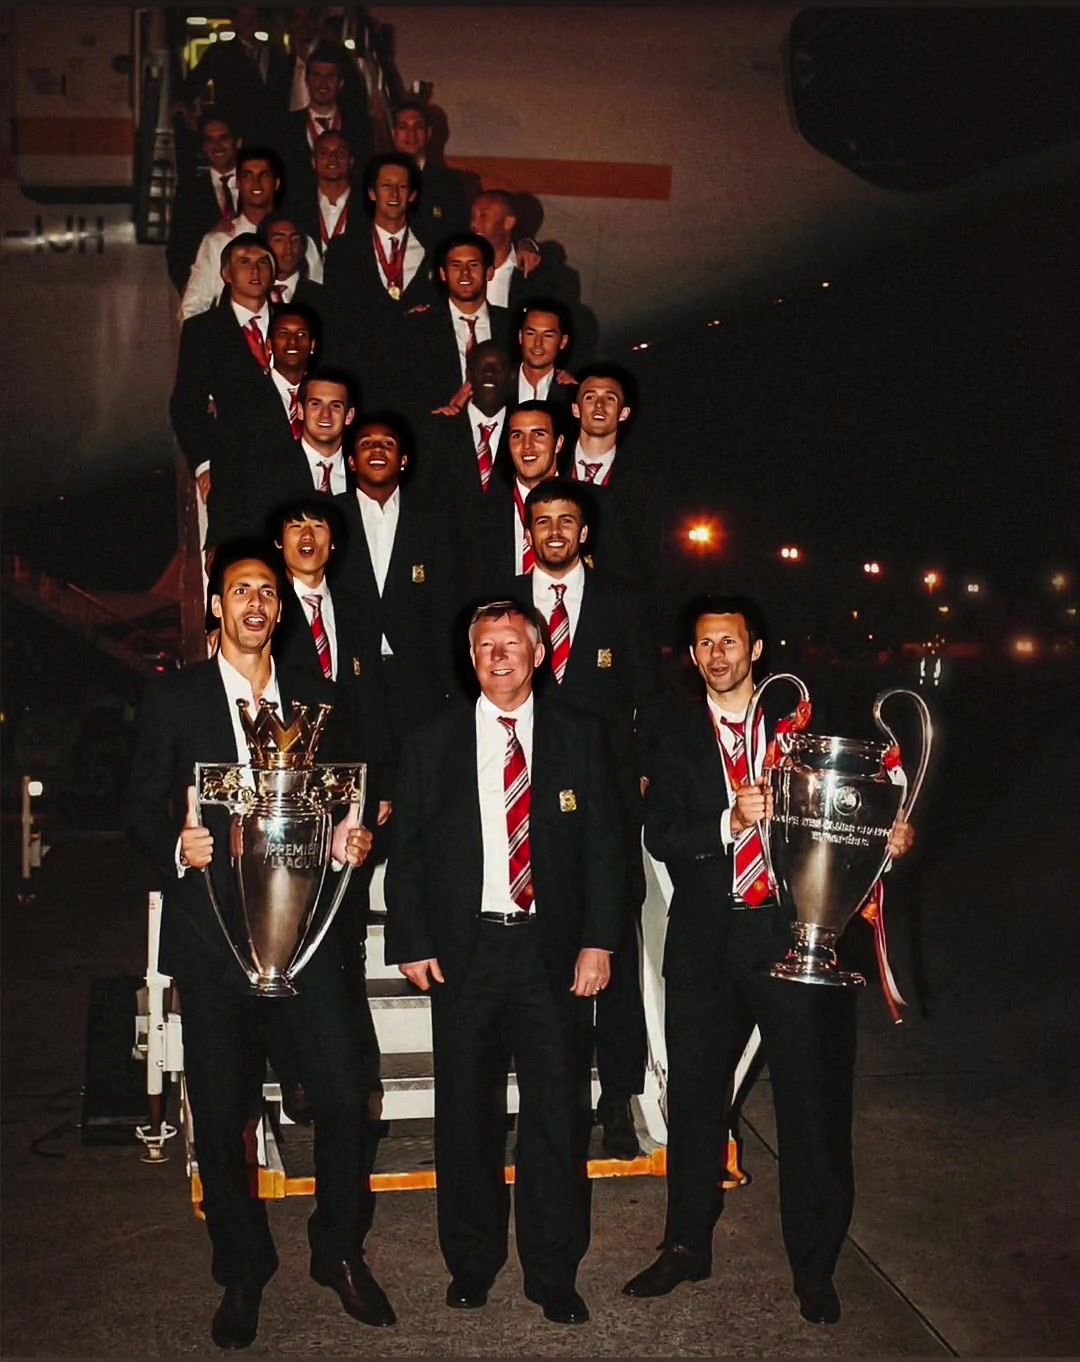 08年欧冠决赛后 弗格森意气风发的率领众弟子回国的机场合照